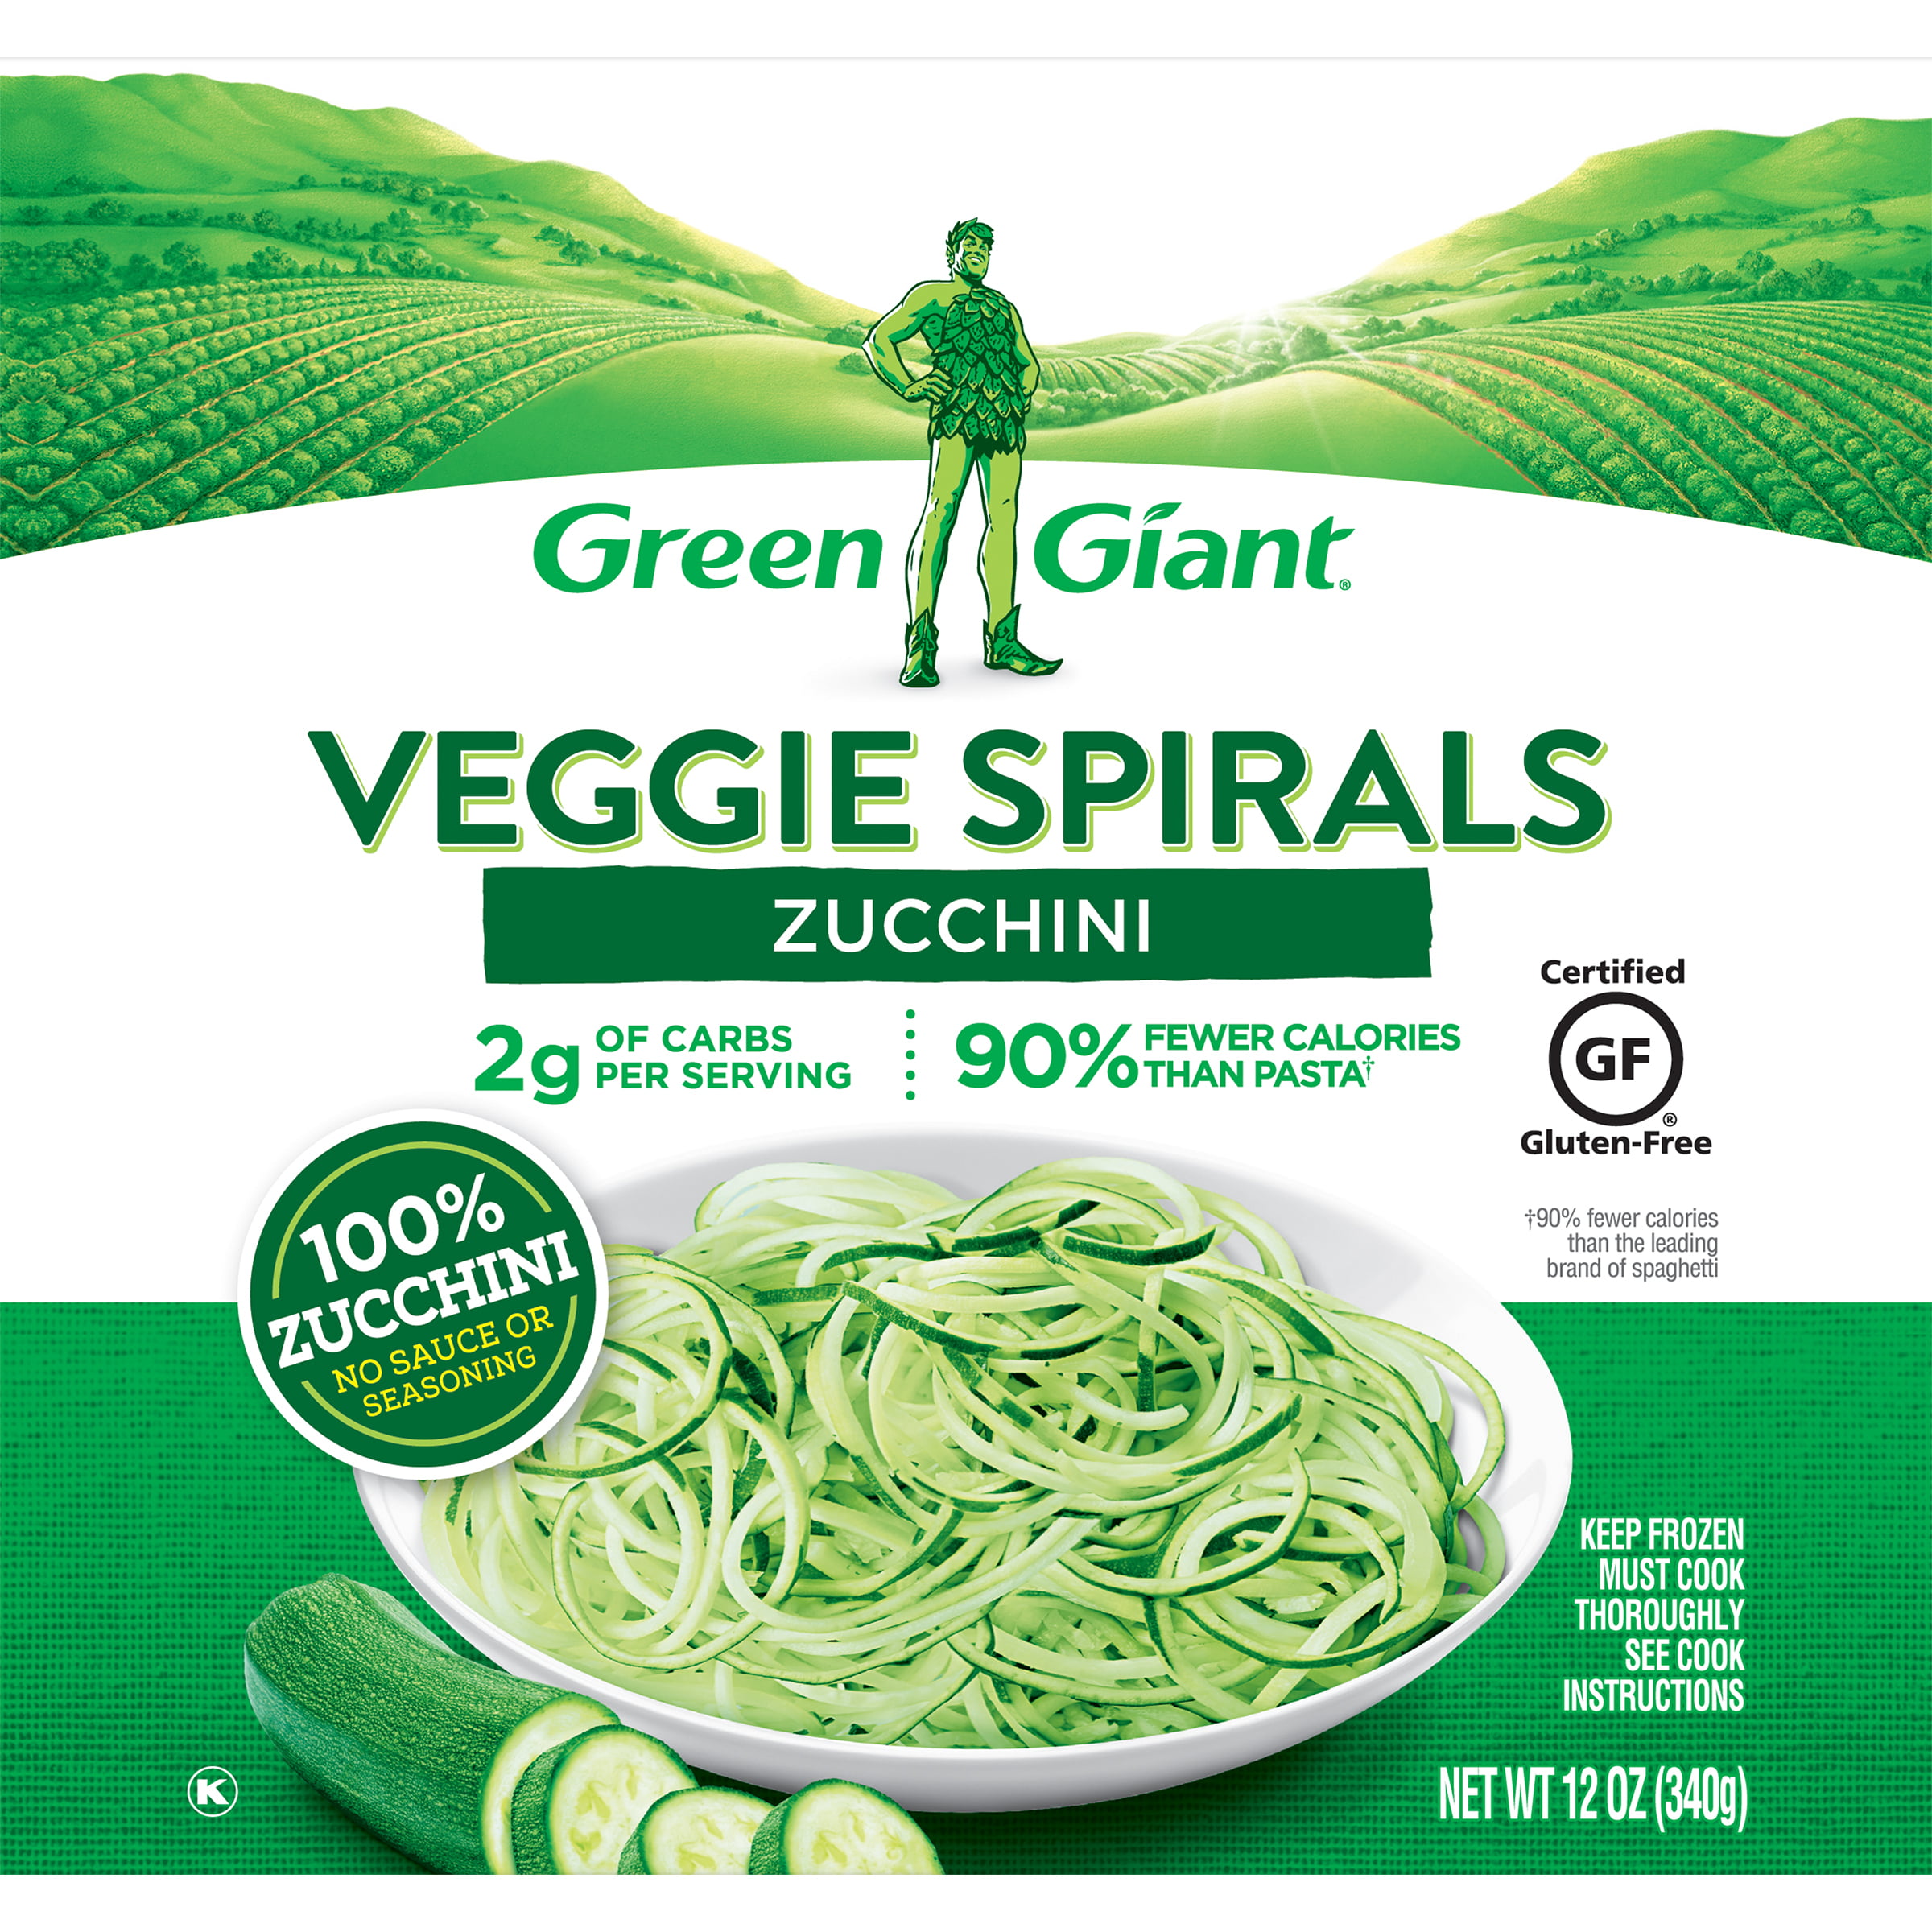 Green Giant Veggie Spirals Zucchini, 12 oz (Frozen)